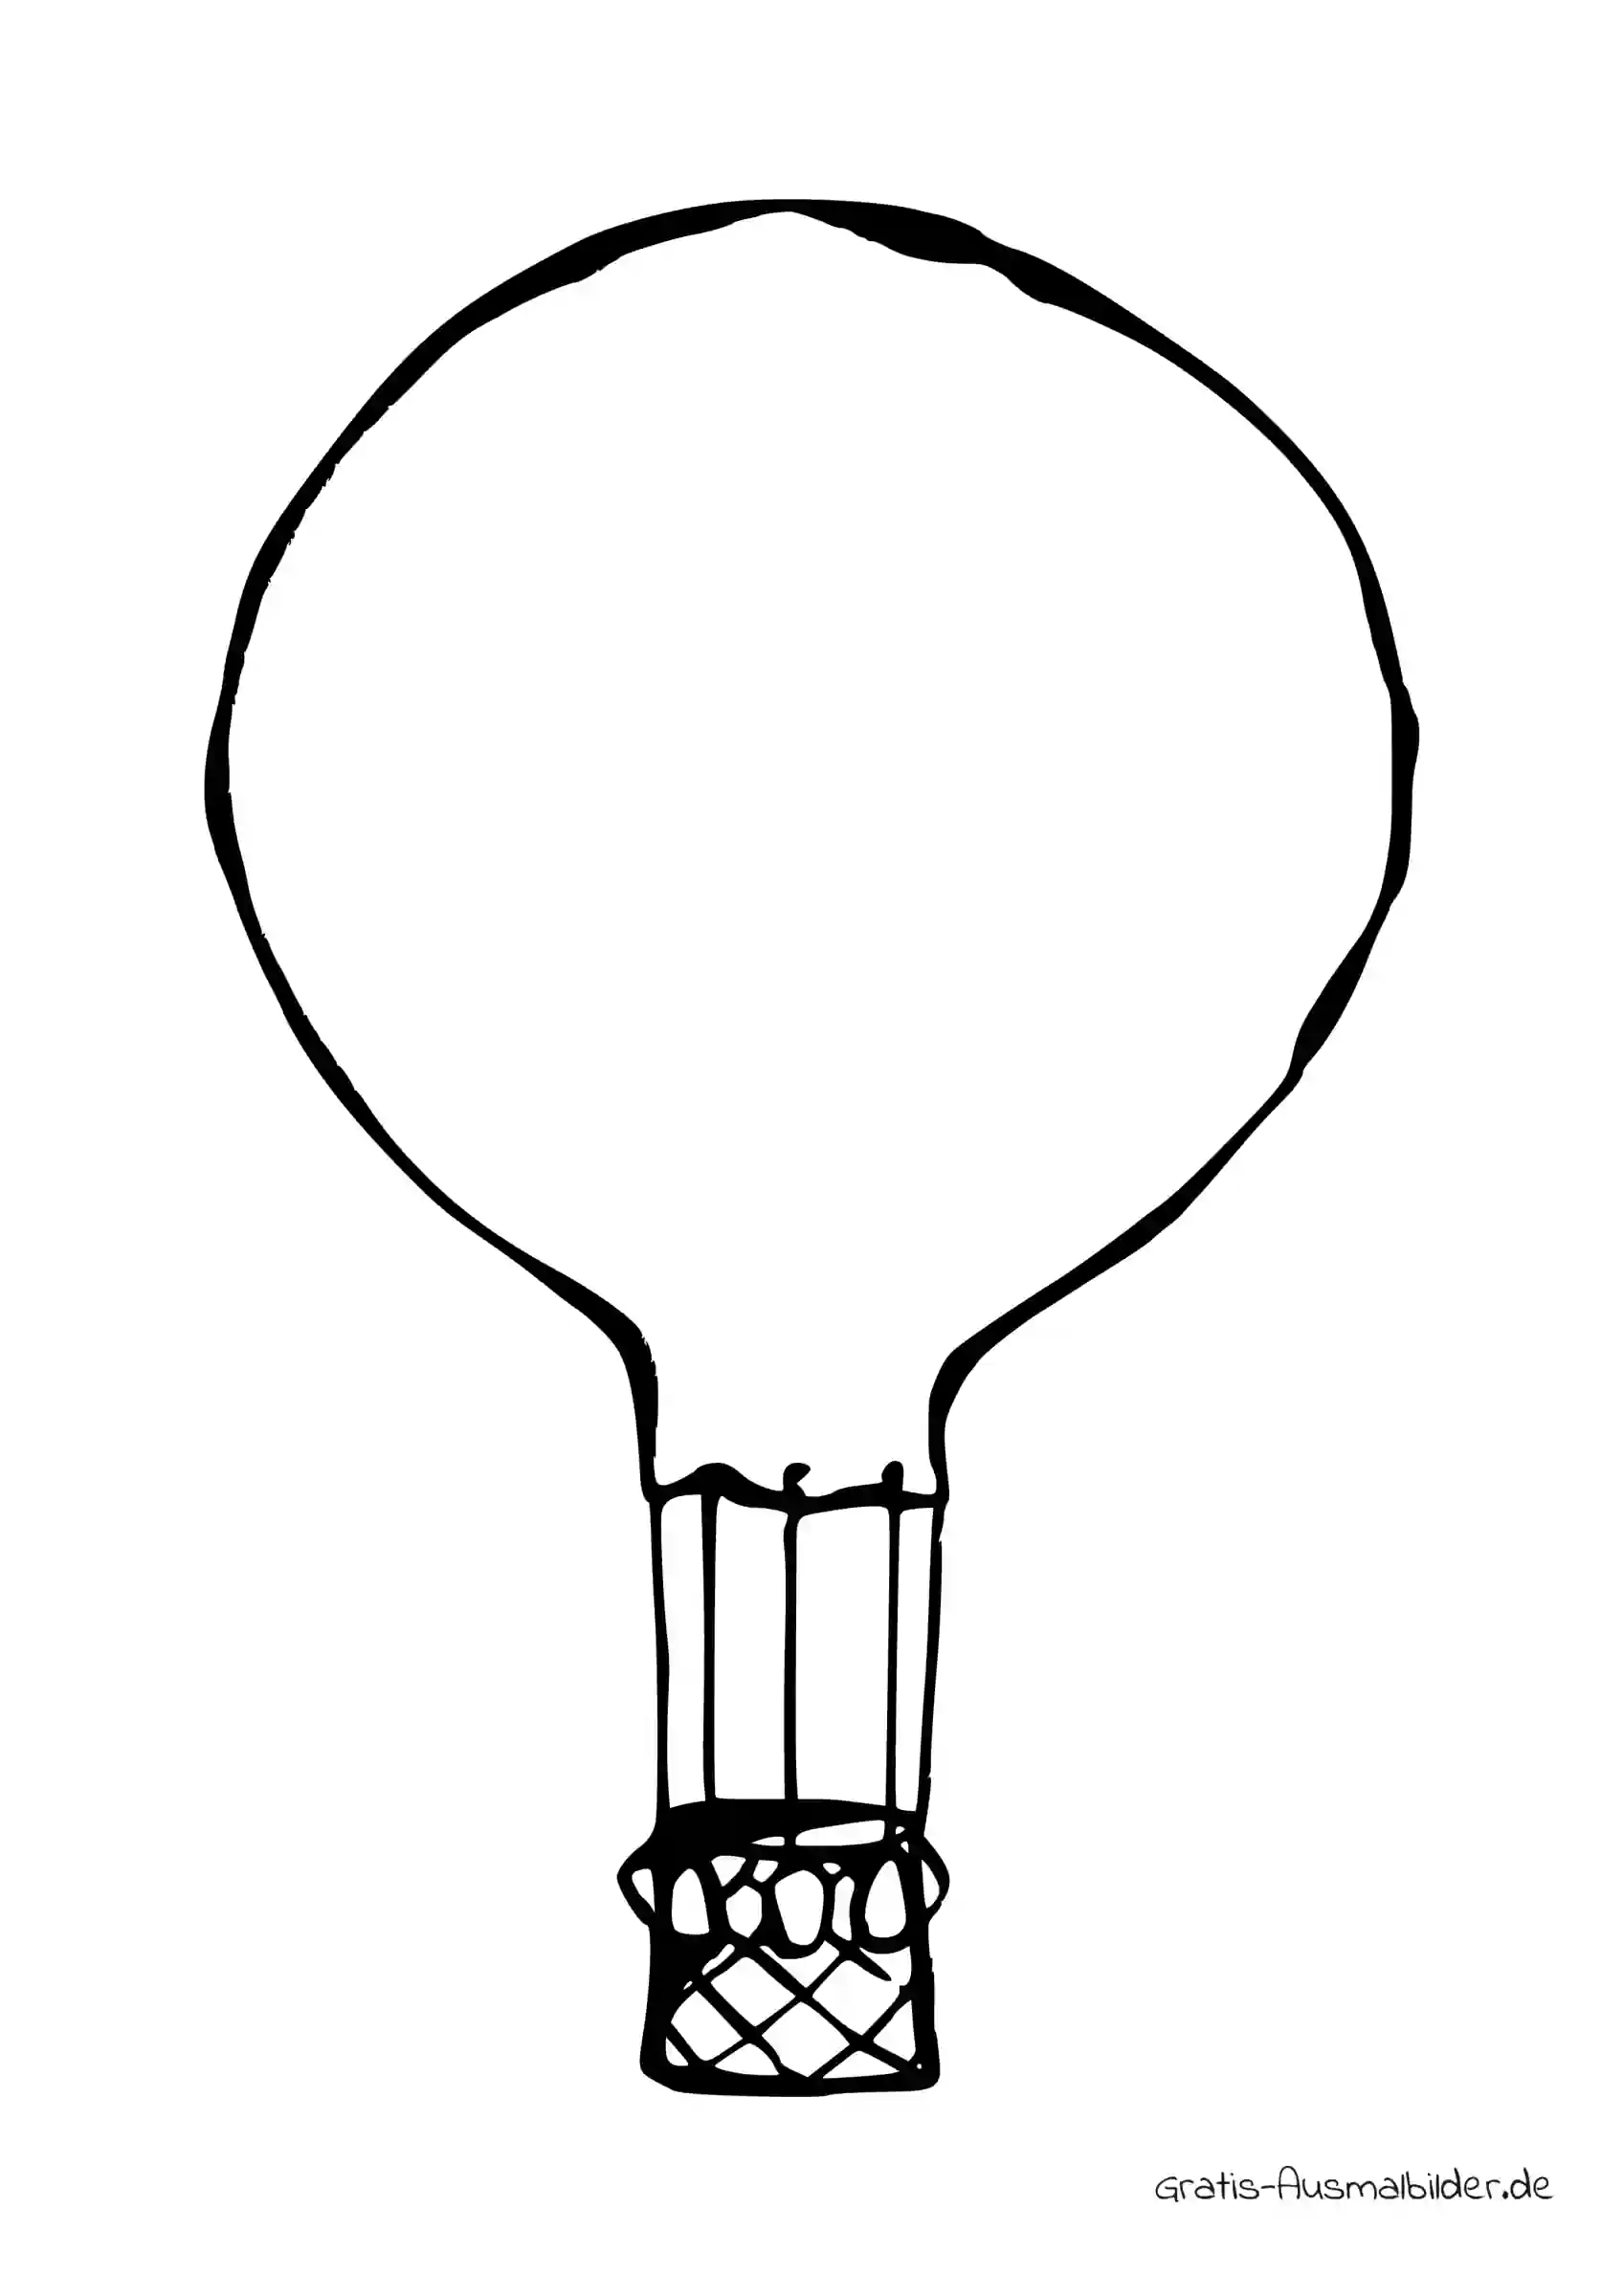 Ausmalbild Klassischer Heißluftballon